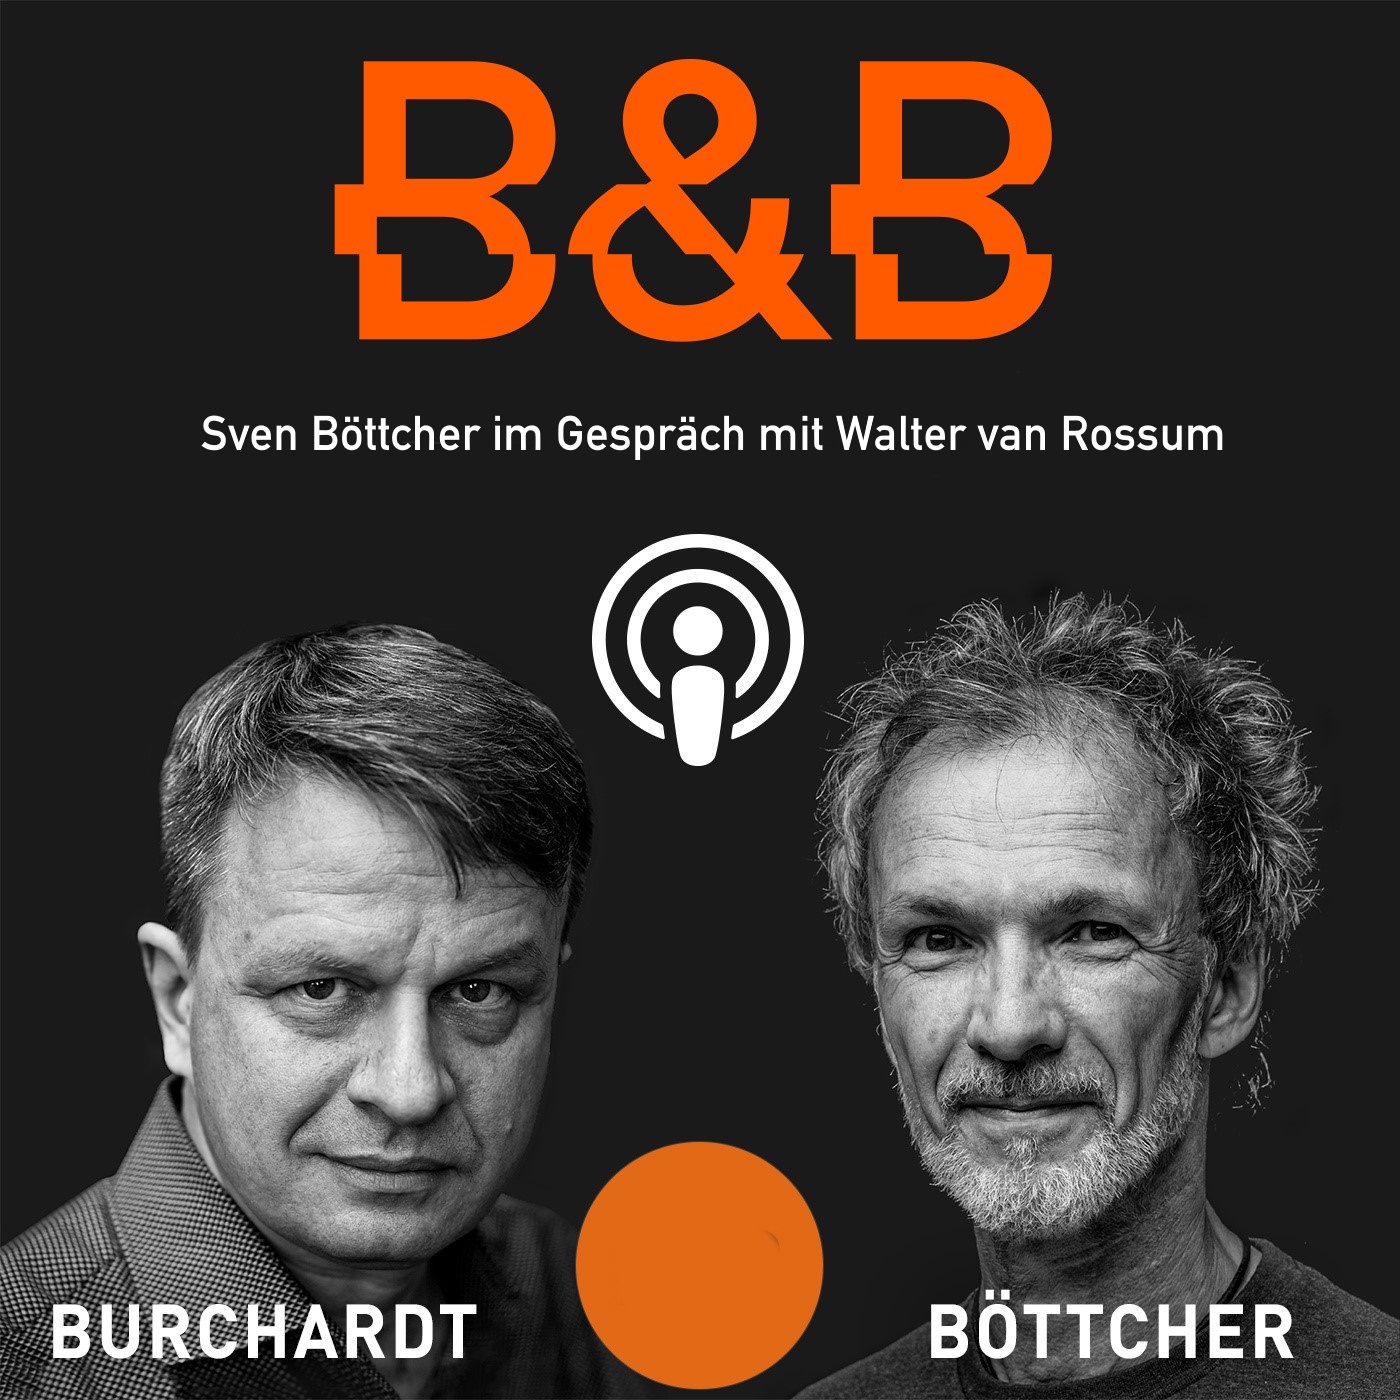 Sven Bottcher im Gespräch mit Walter van Rossum